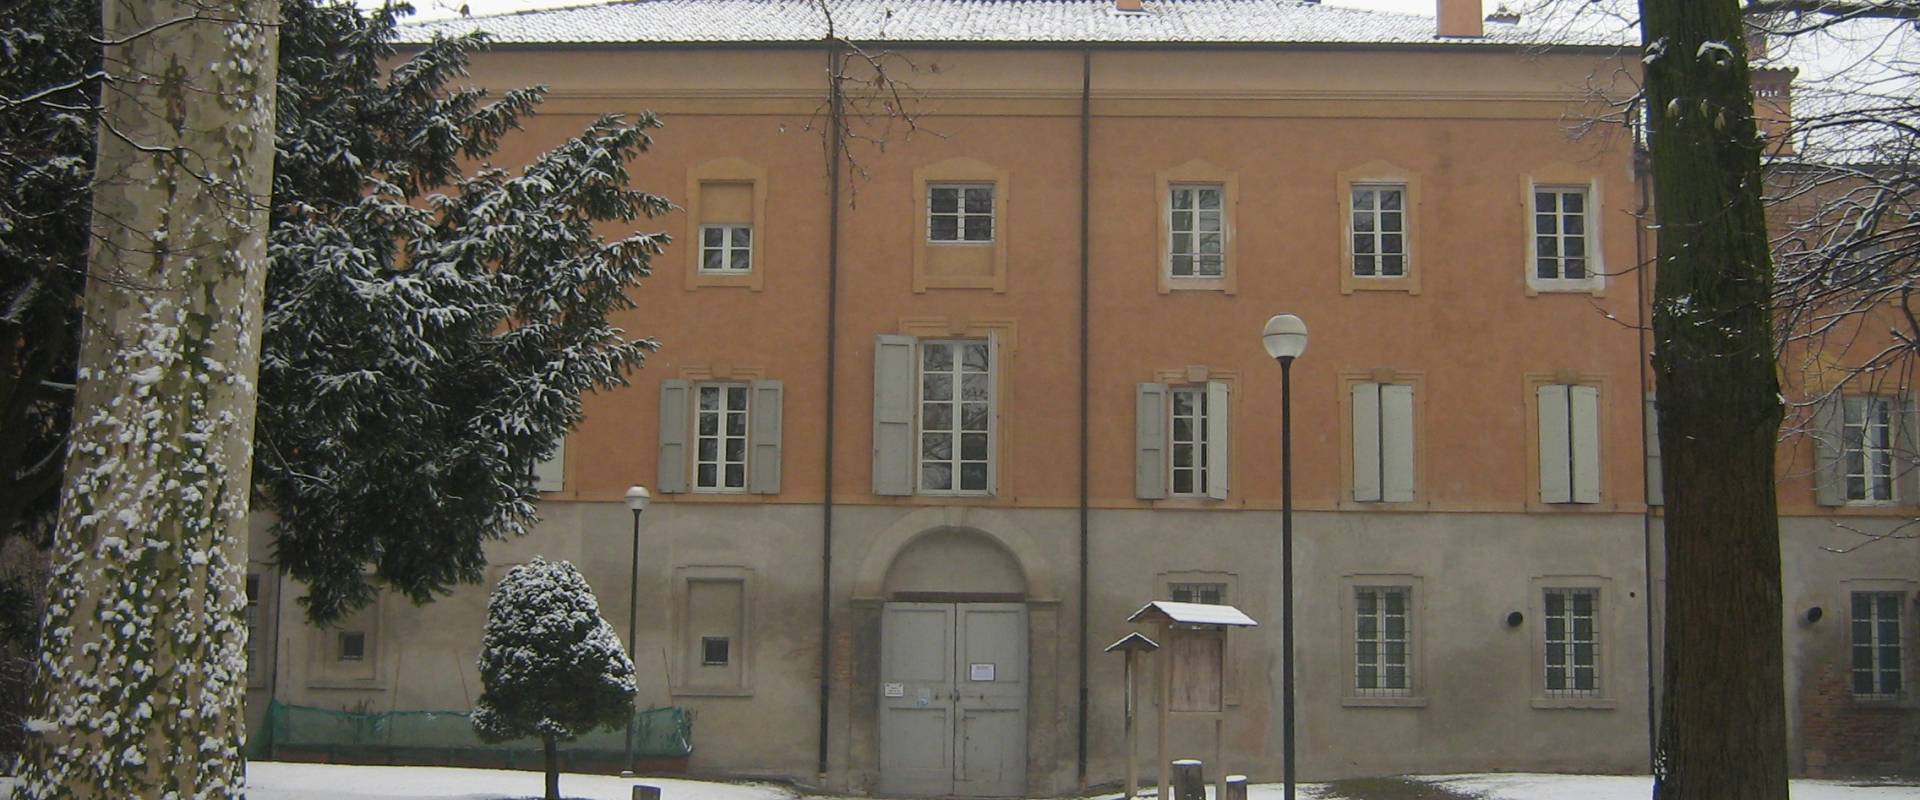 Palazzo Sartoretti e parco in inverno photo by Claudio Magnani